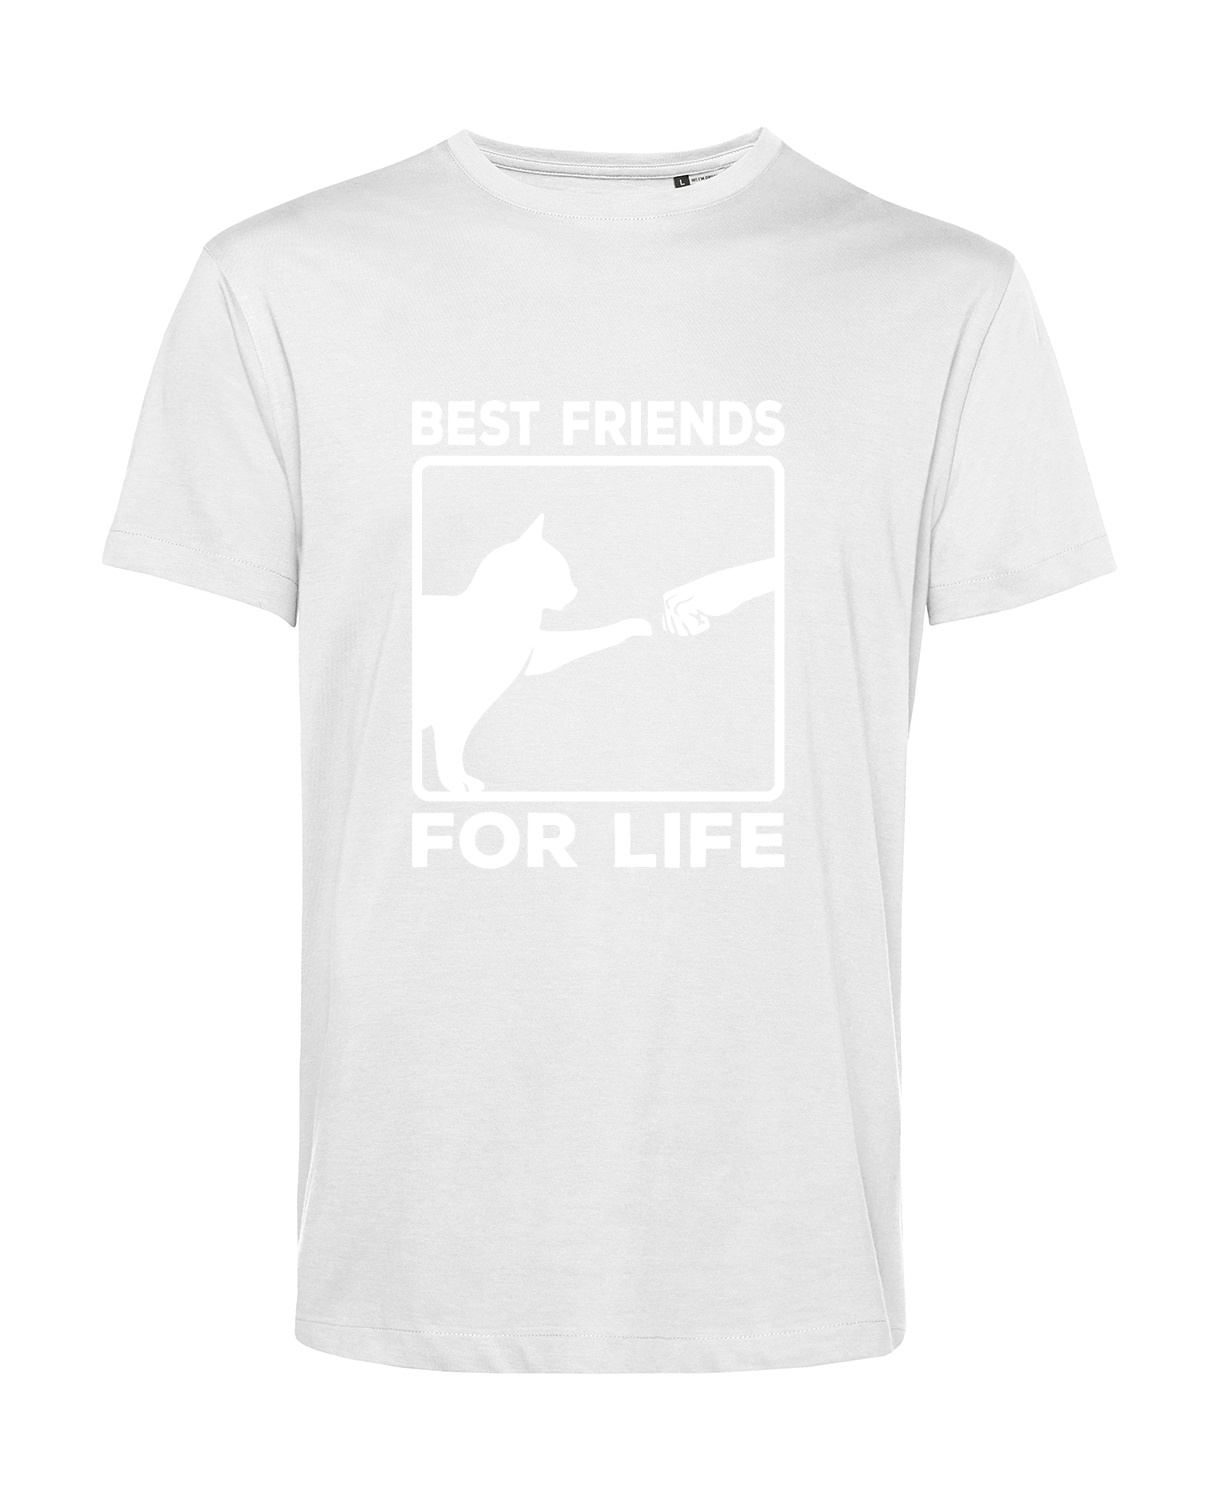 Nachhaltiges T-Shirt Herren Katzen - Best friends for life